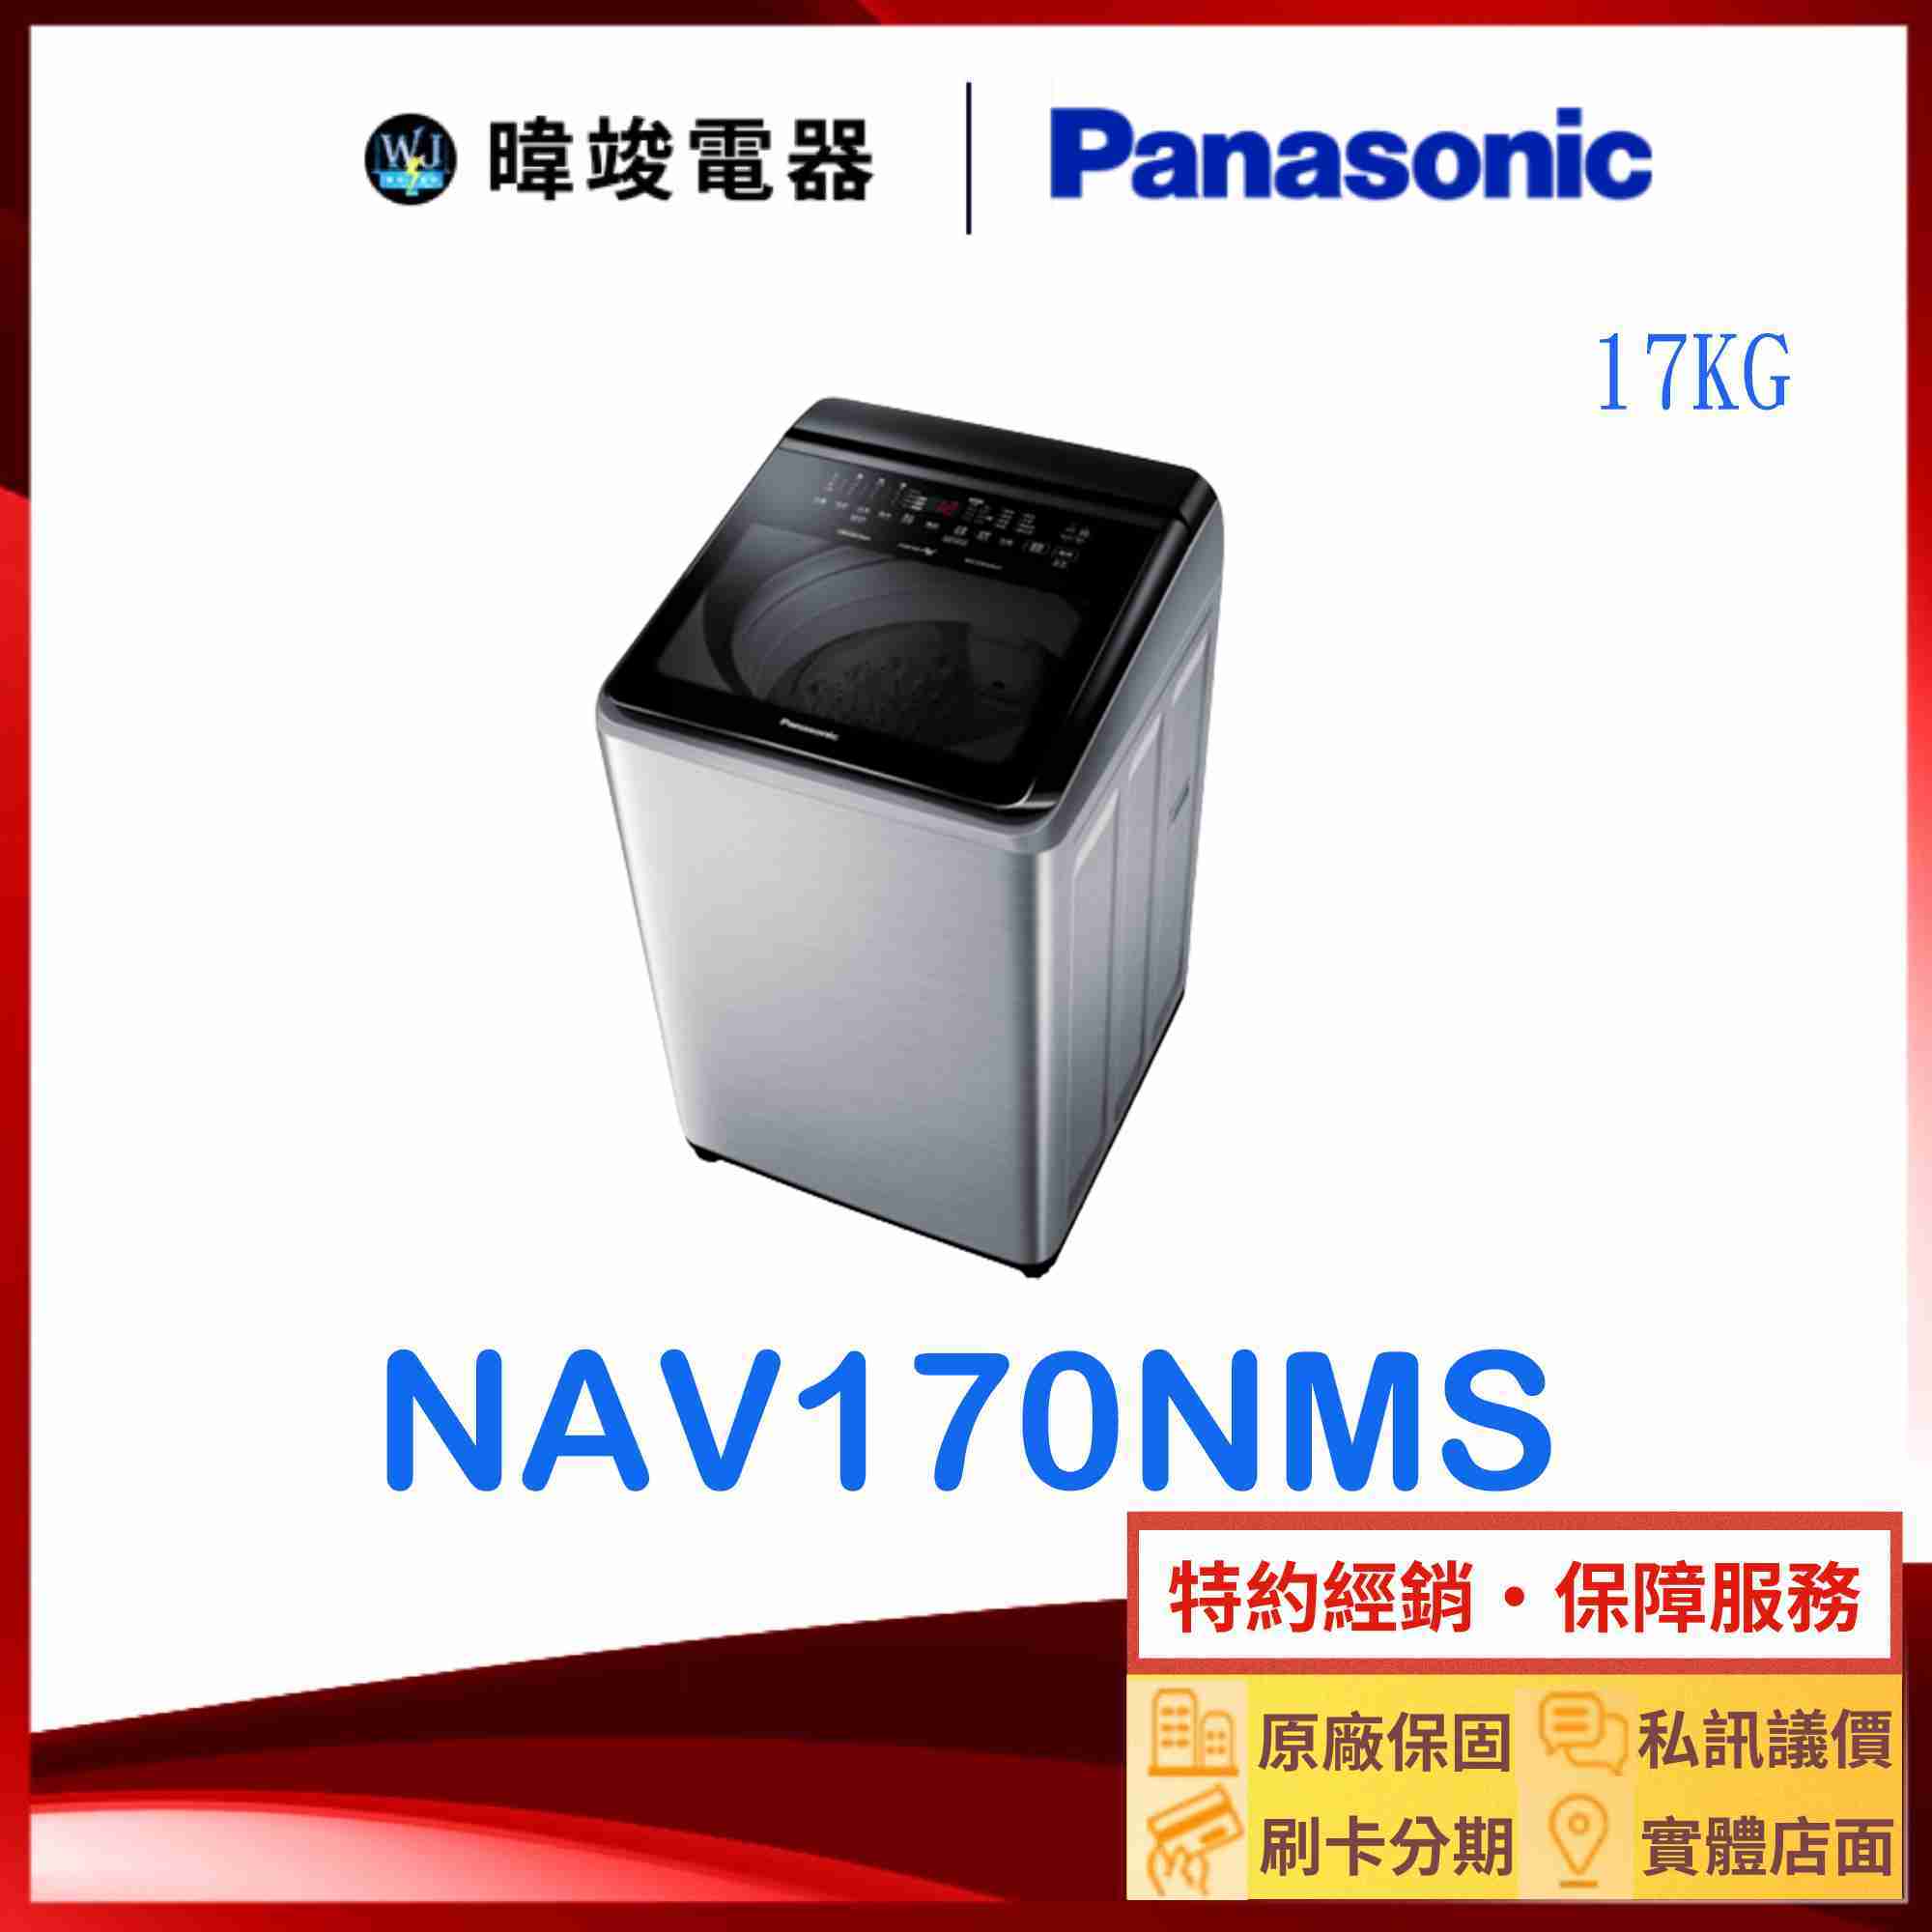 【暐竣電器】Panasonic 國際牌 NAV170NMS 17公斤洗衣機 NA-V170NMS直立式變頻智能聯網洗衣機